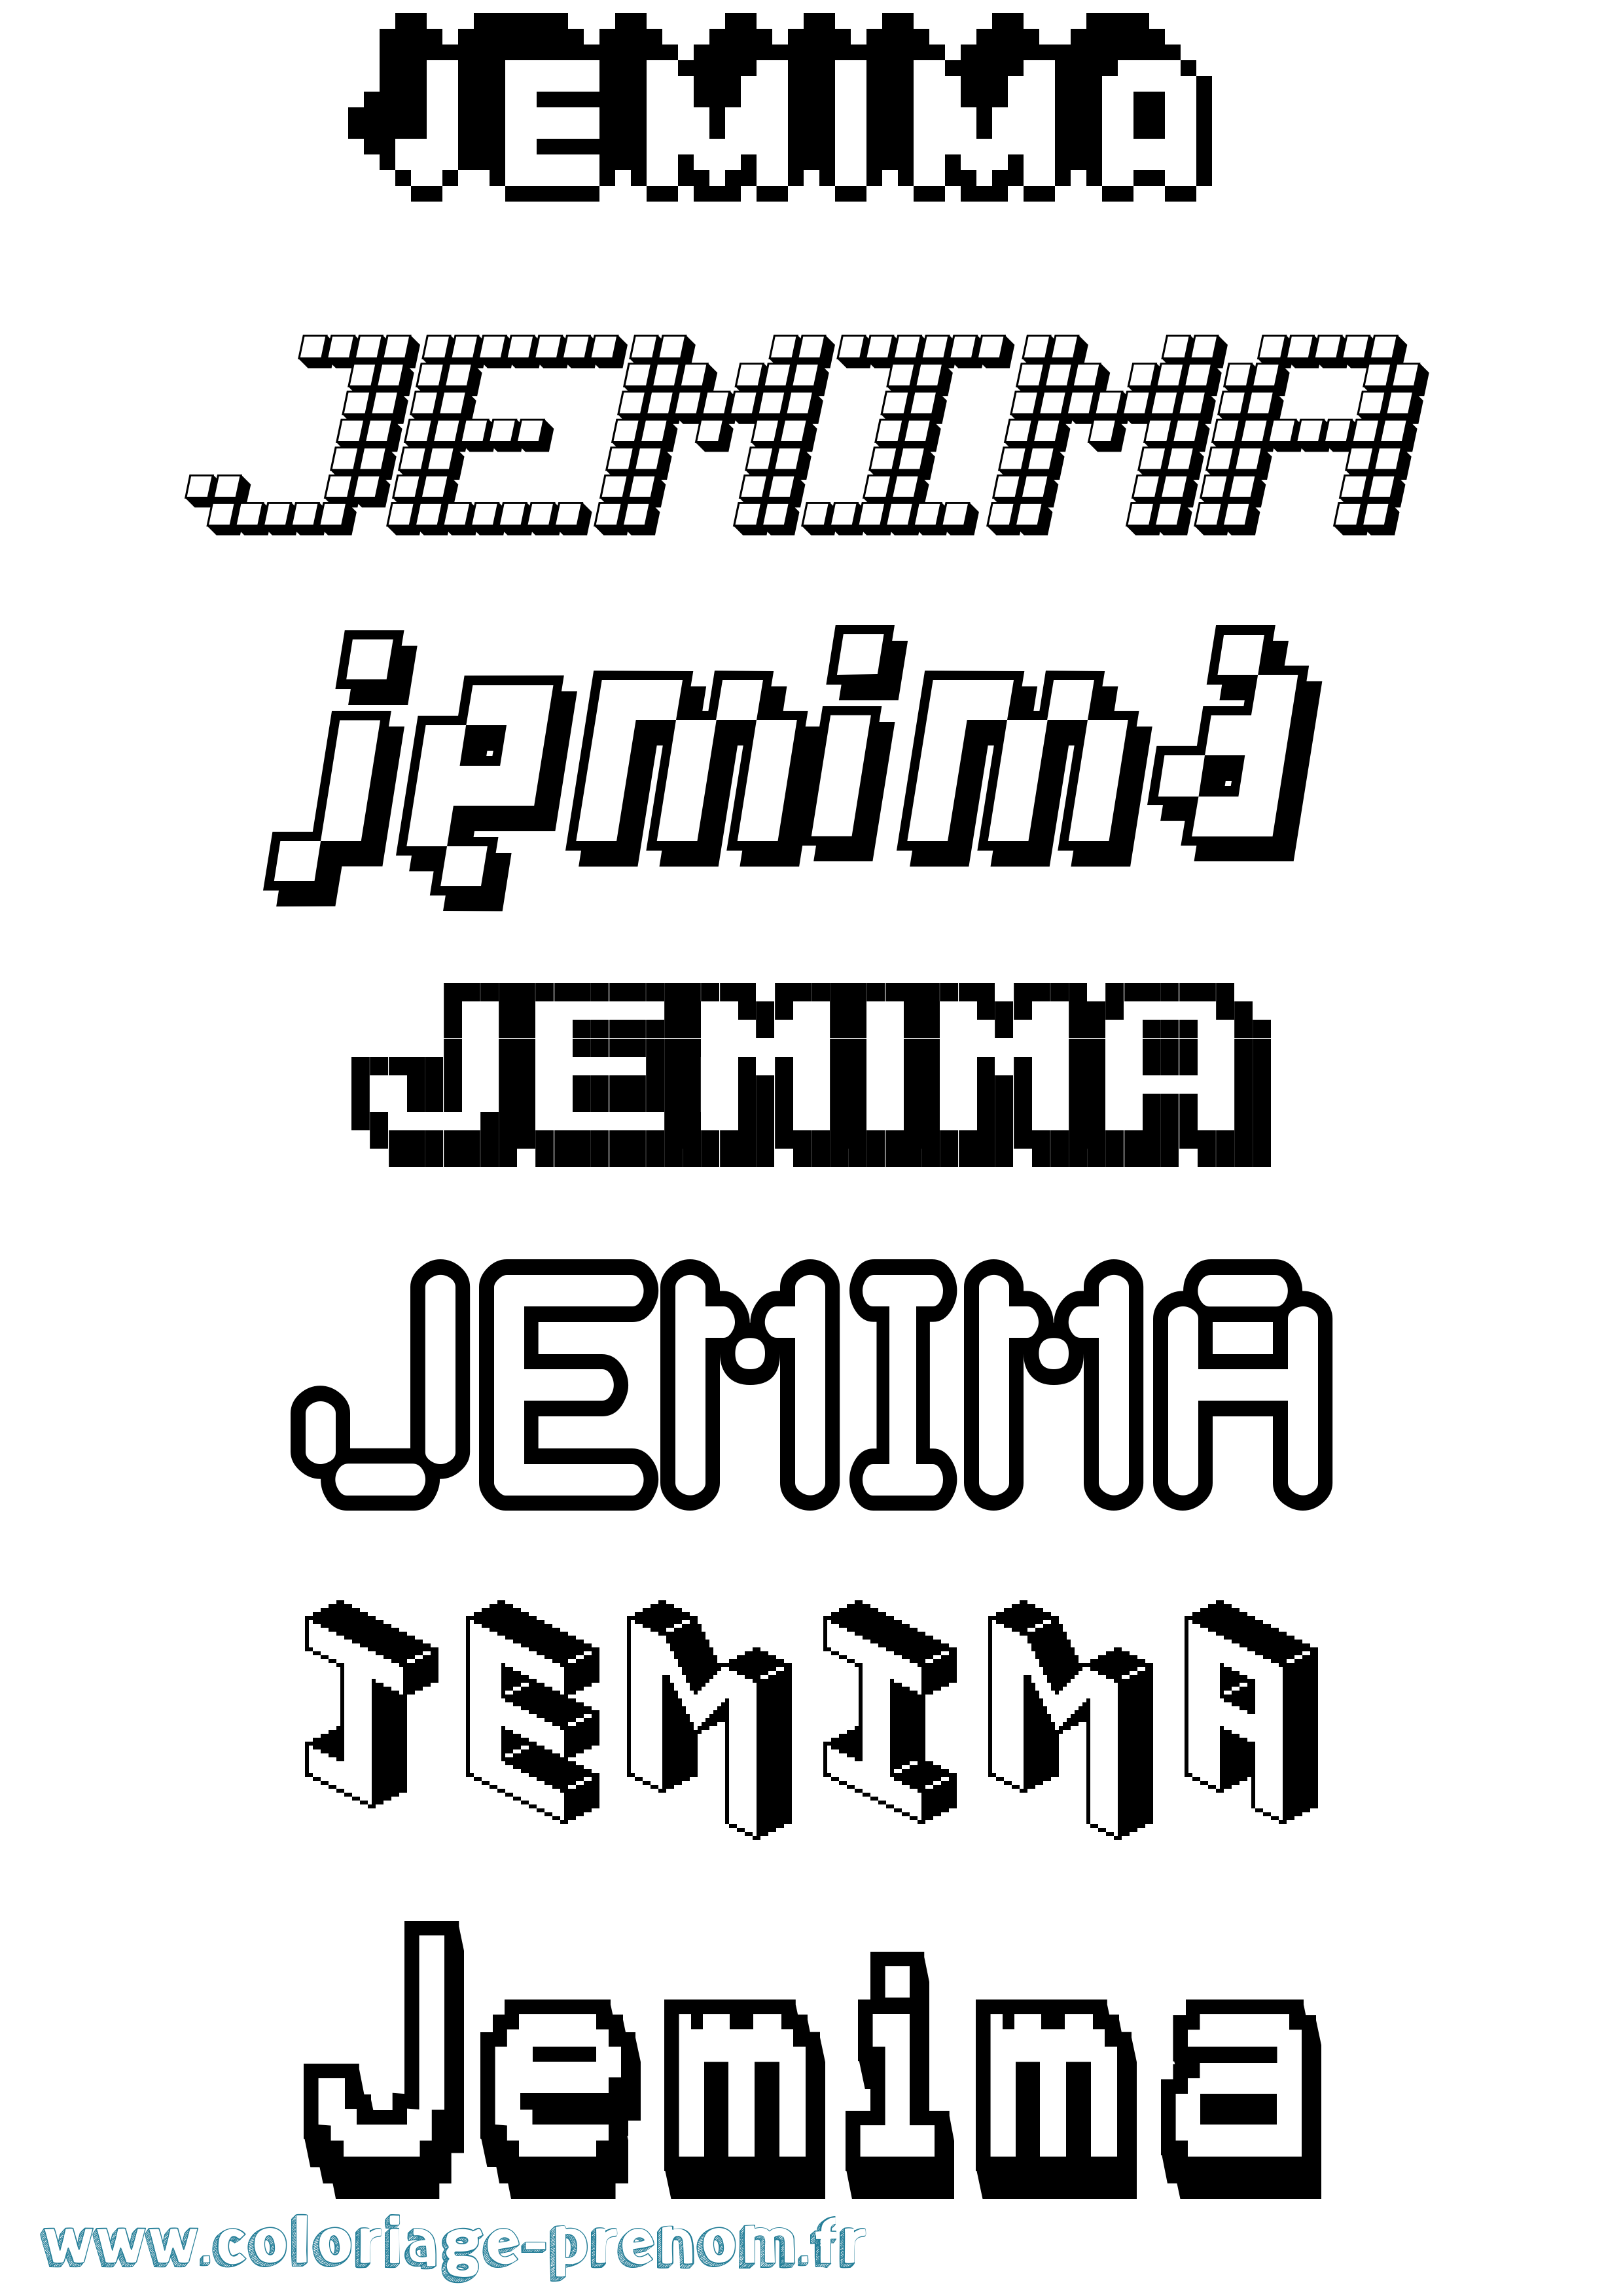 Coloriage prénom Jemima Pixel